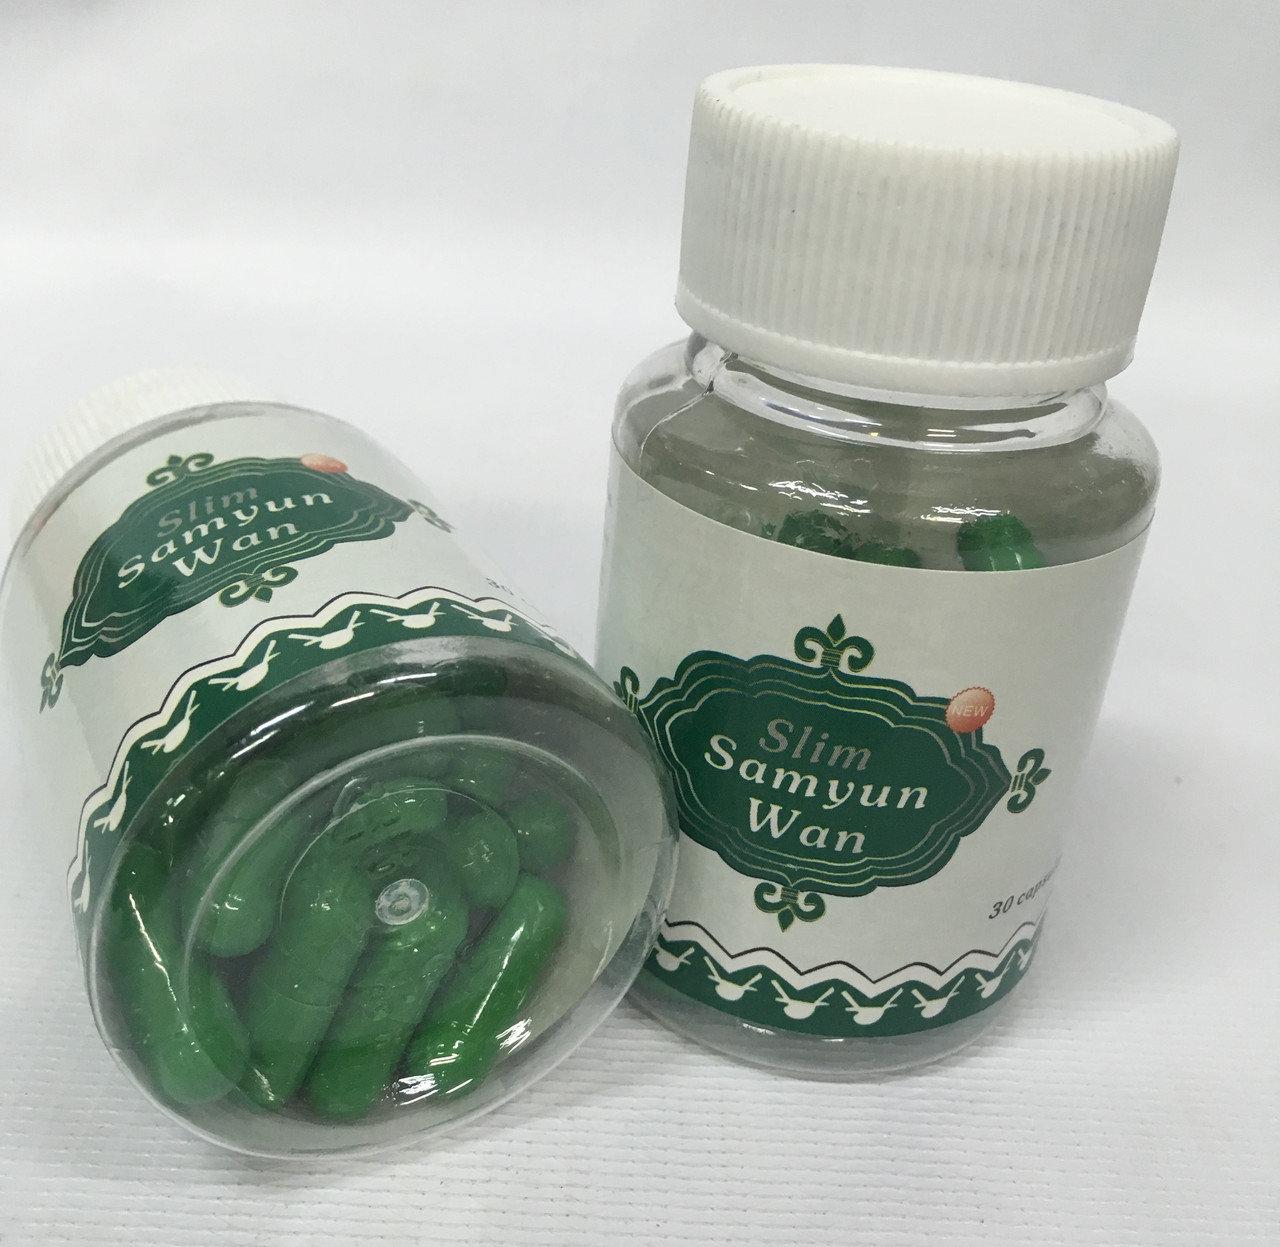 Samyun Wan для похудения ( Индонезия ) с зелеными капсулами